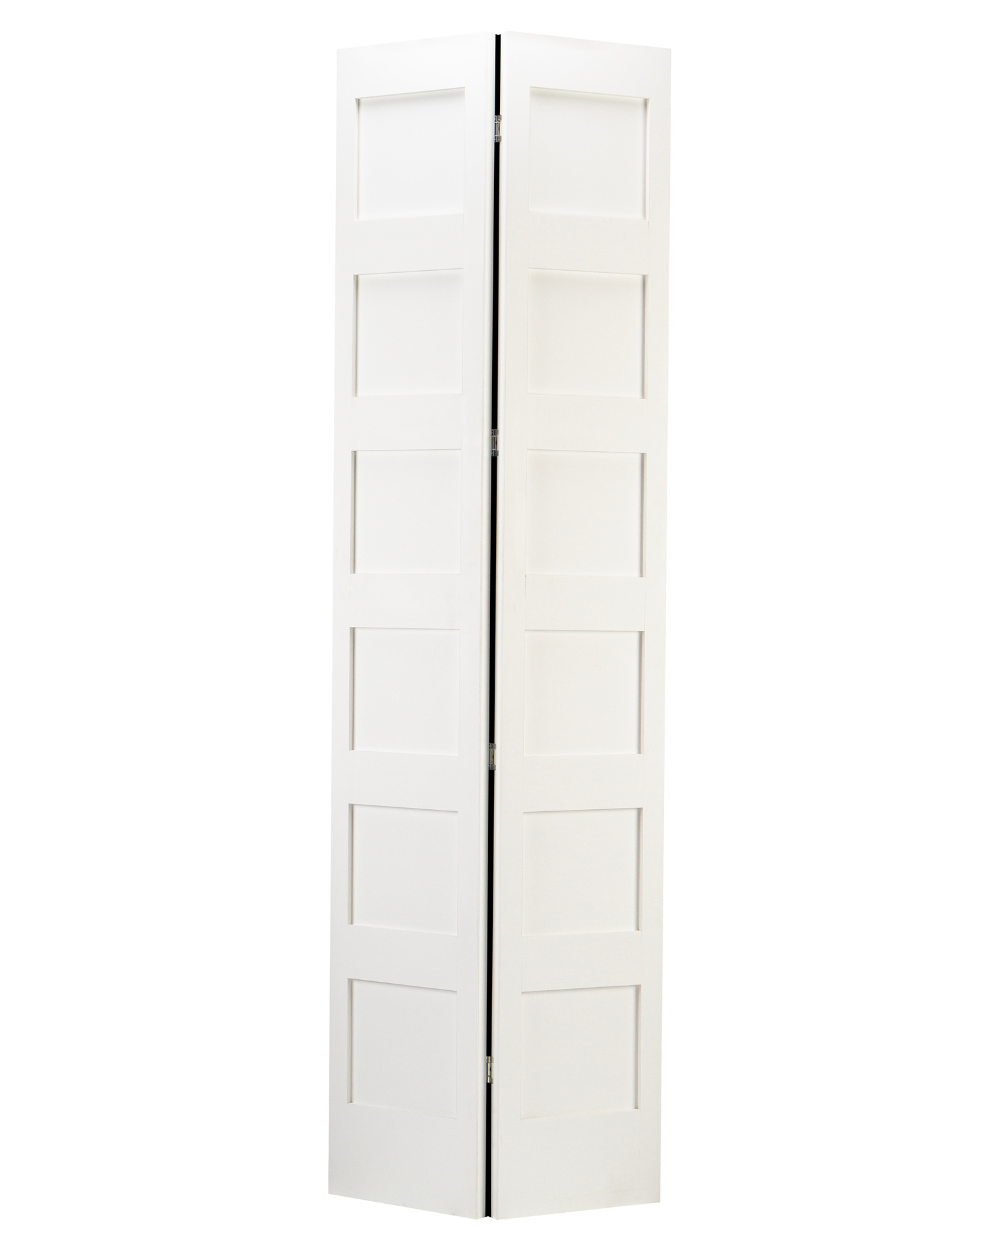 6 Panel Shaker Style Bifold Door